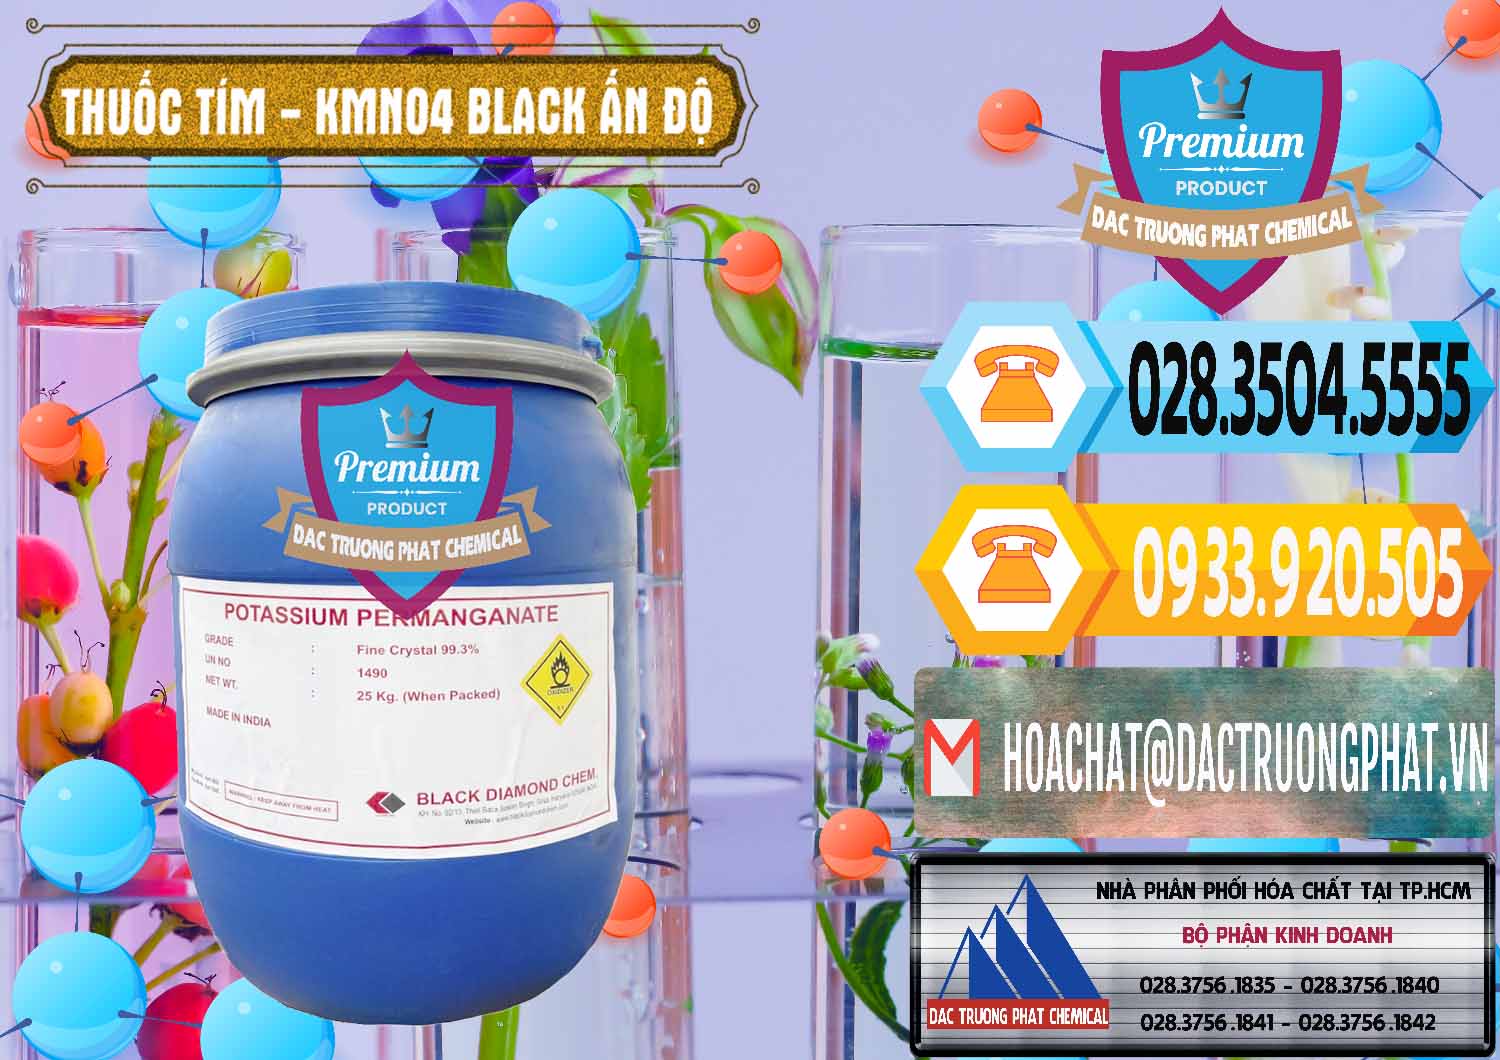 Chuyên bán & cung cấp Thuốc Tím - KMNO4 Black Diamond Ấn Độ India - 0414 - Nhà cung cấp & phân phối hóa chất tại TP.HCM - hoachattayrua.net